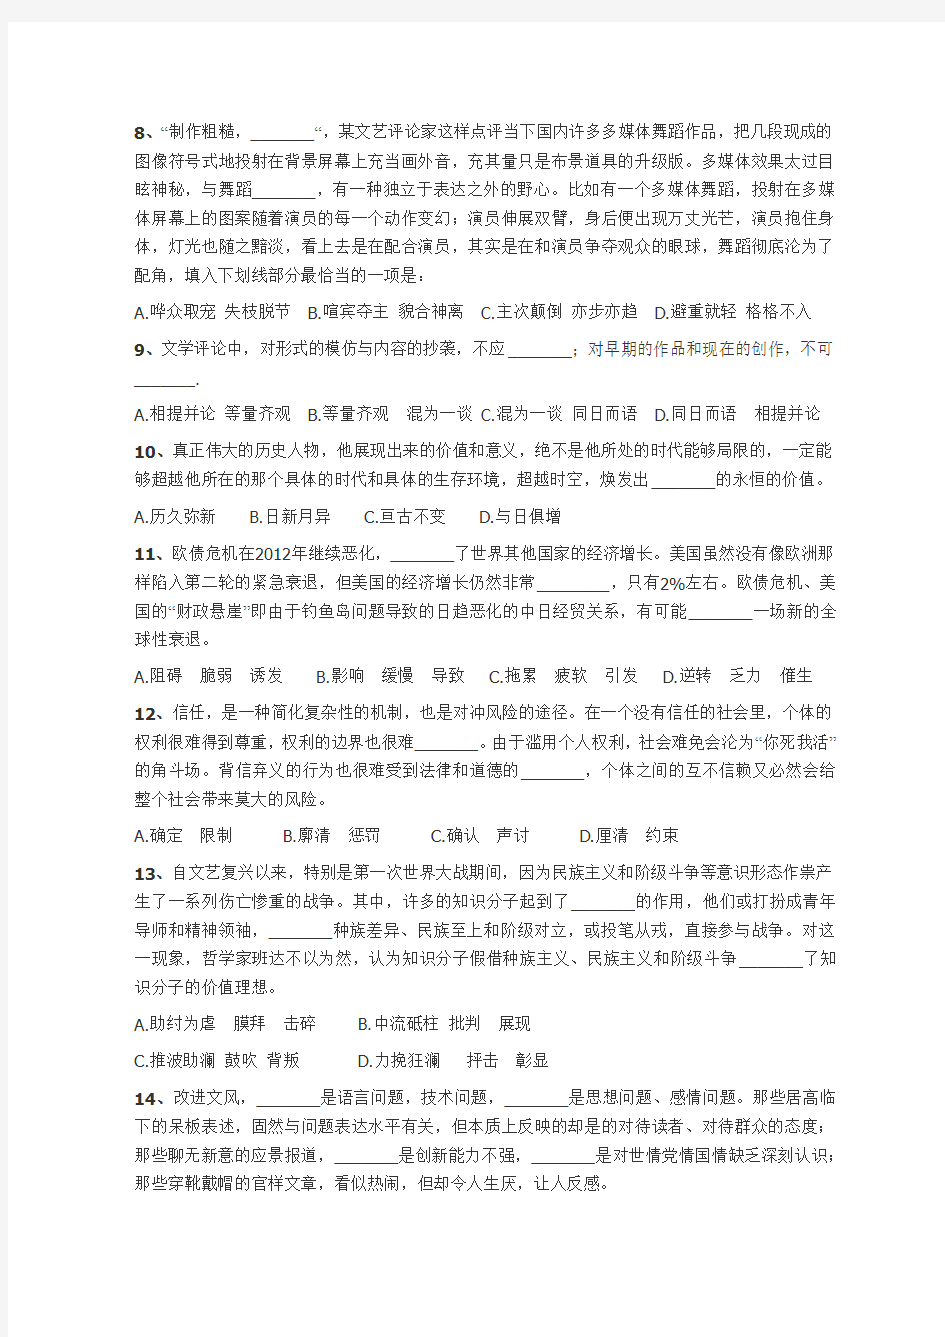 2013年浙江省公务员考试行测真题(A卷)(完美打印版)